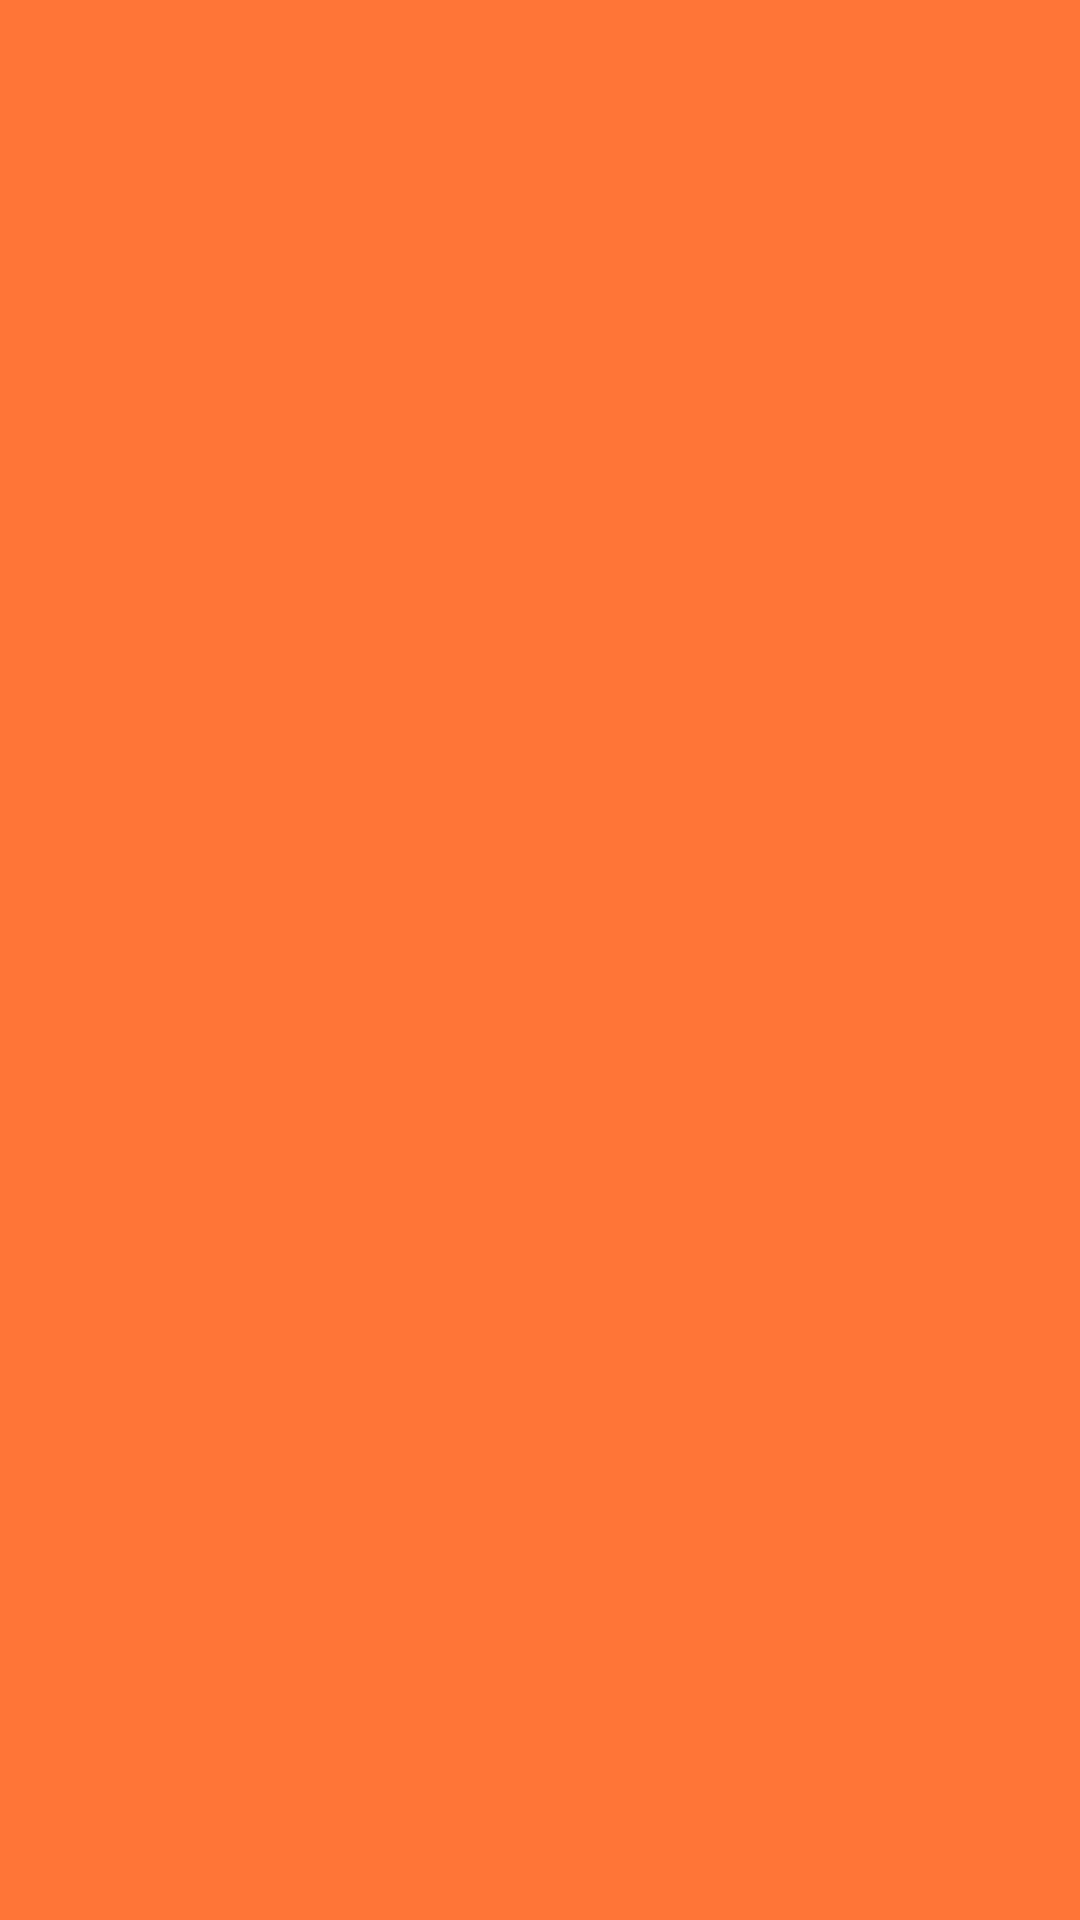 1080x1920 Orange Crayola Solid Color Background